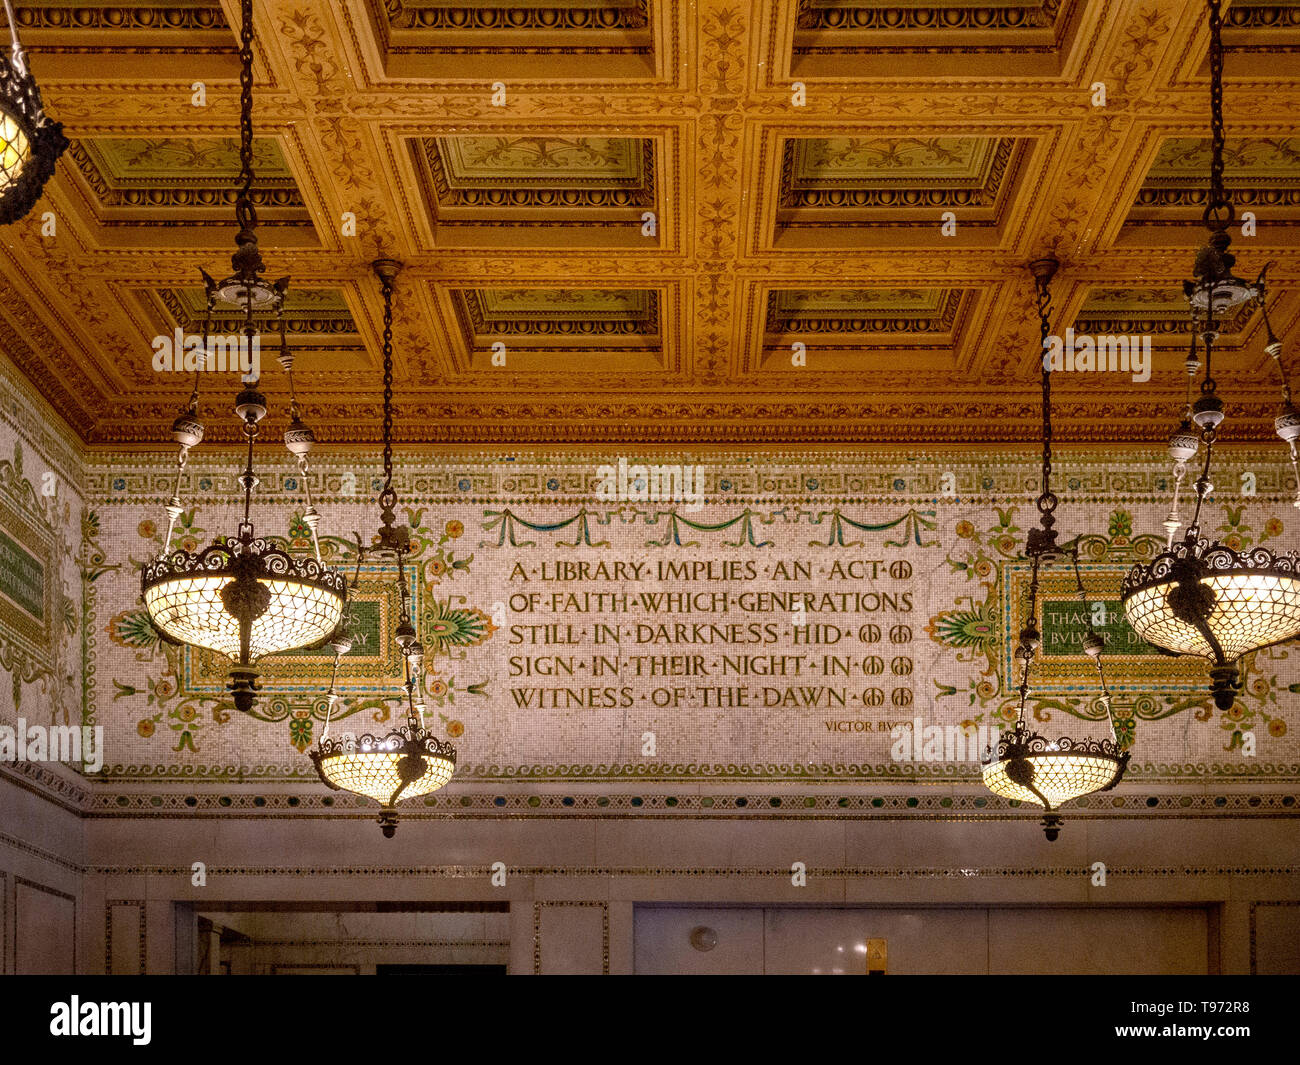 Ein Angebot an der Wand der reich verzierten 19. Jahrhundert Chicago Cultural Center von Victor Hugo beschreibt den Zweck einer Bibliothek in einem Gebäude, das einst die wichtigsten Gebäude der Stadt. Hinweis Kassettendecke. Stockfoto